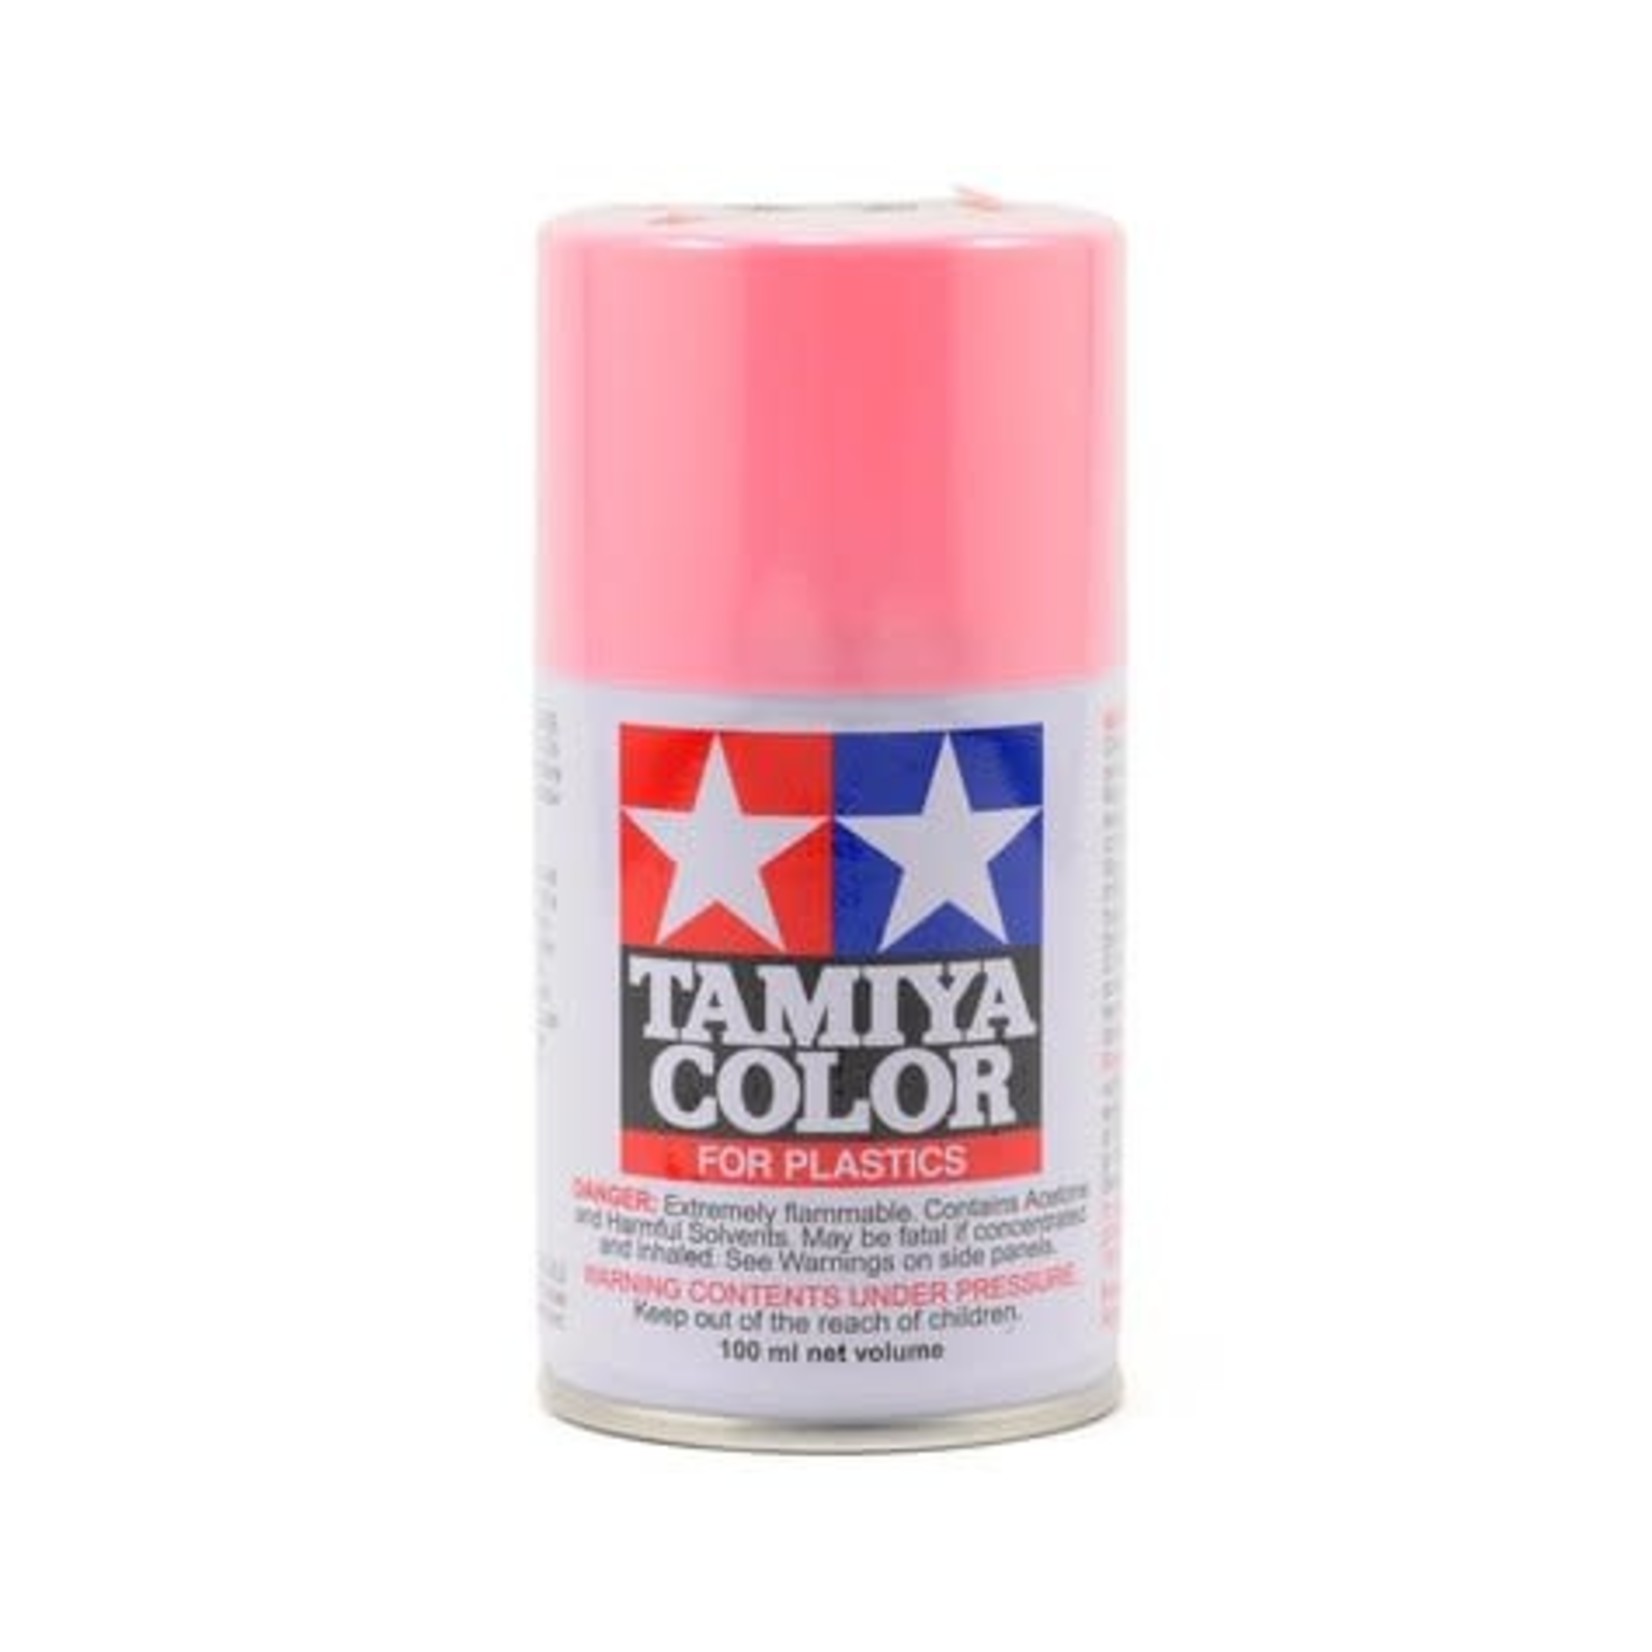 Tamiya Tamiya TS-25 Pure Pink Lacquer Spray Paint (100ml) #85025